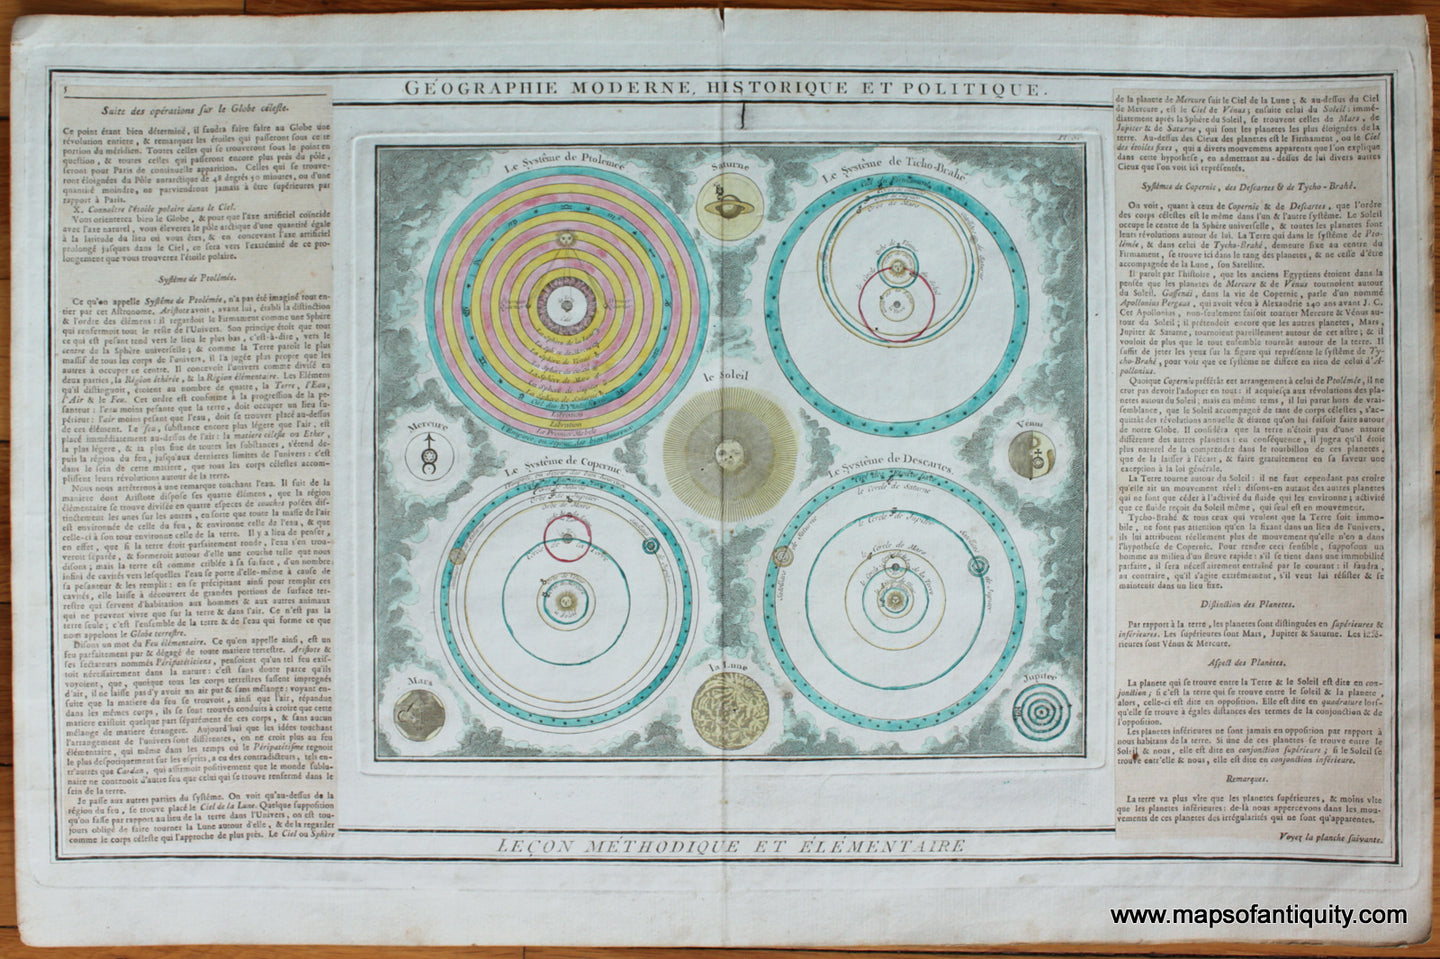 Antique-Hand-Colored-Celestial-Map-Geographie-Moderne-Historique-et-Politique-******-Antique-Celestial-&-Constellation-Maps--1790-Brion-de-La-Tour-Maps-Of-Antiquity